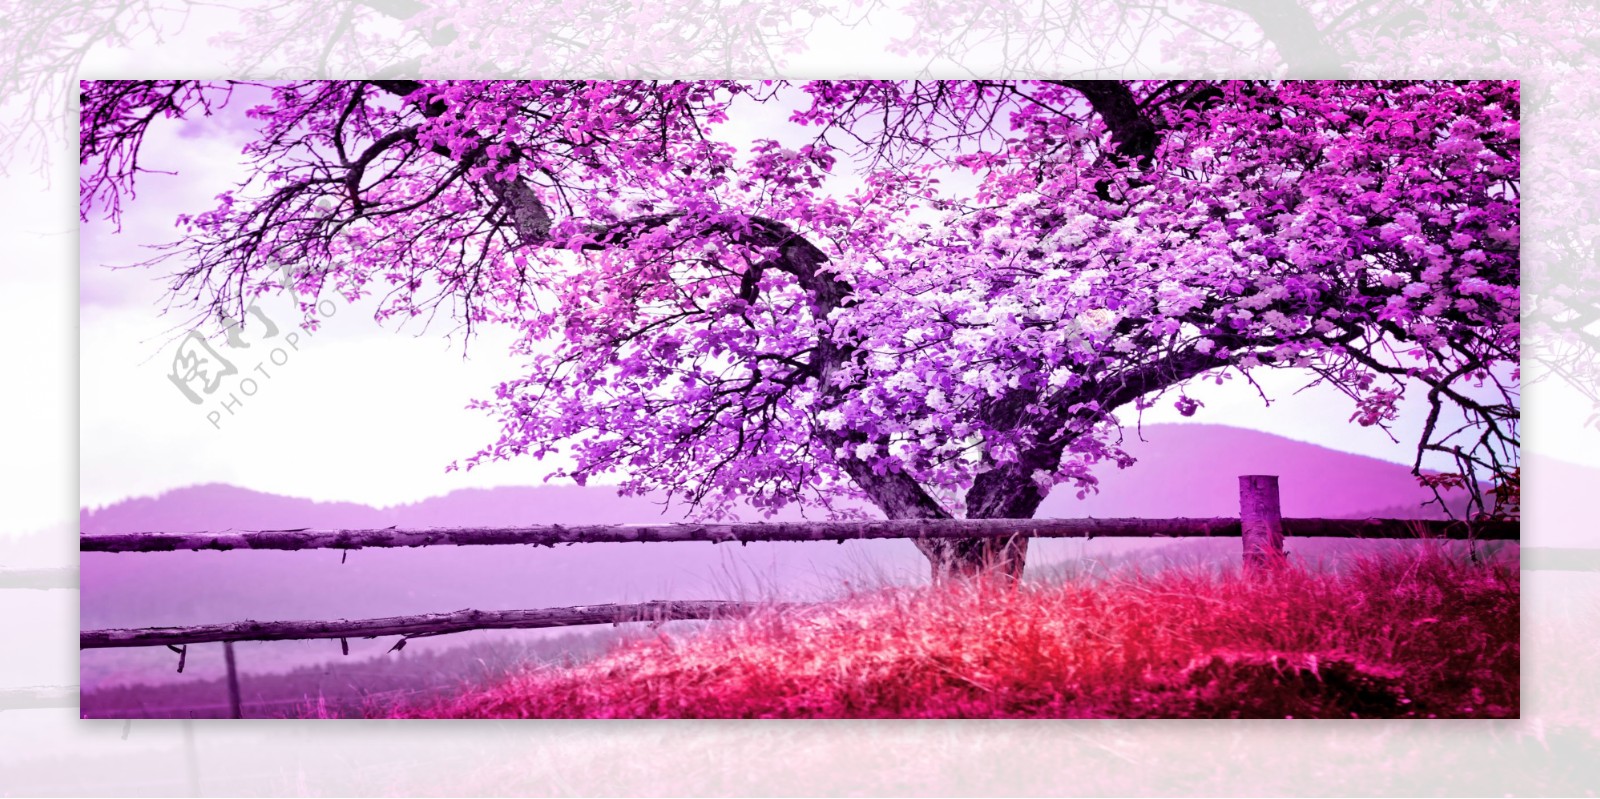 紫色大树